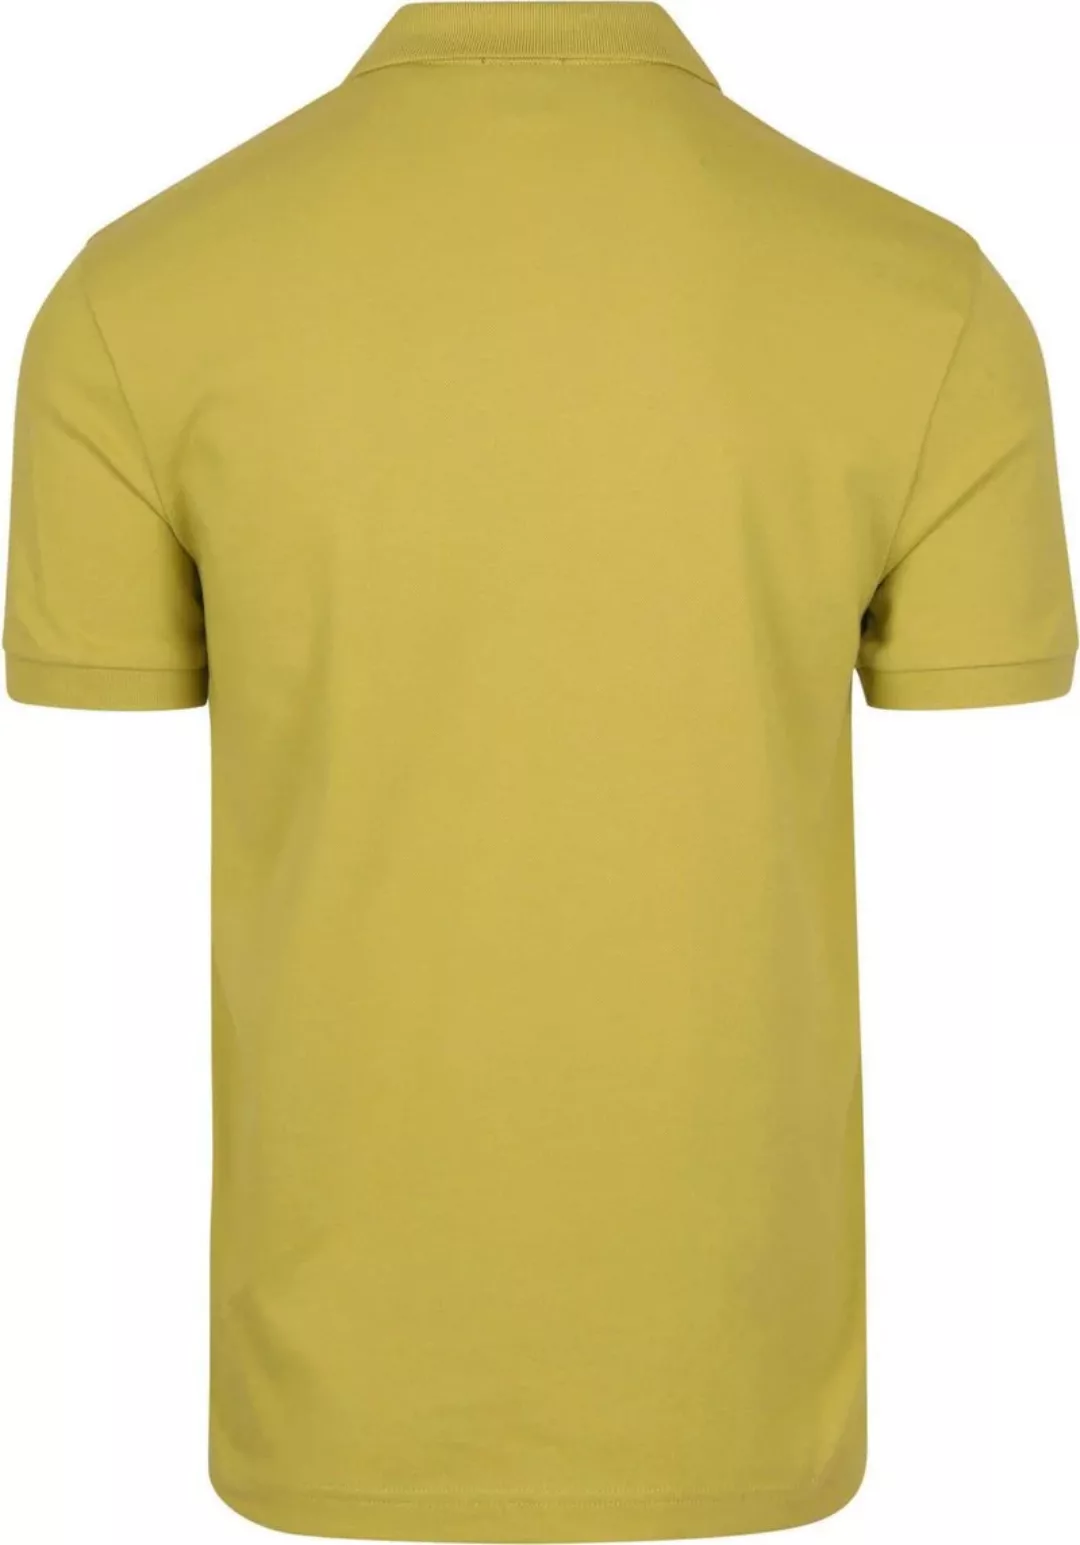 BOSS Polo Shirt Passenger Hellgrün - Größe XXL günstig online kaufen